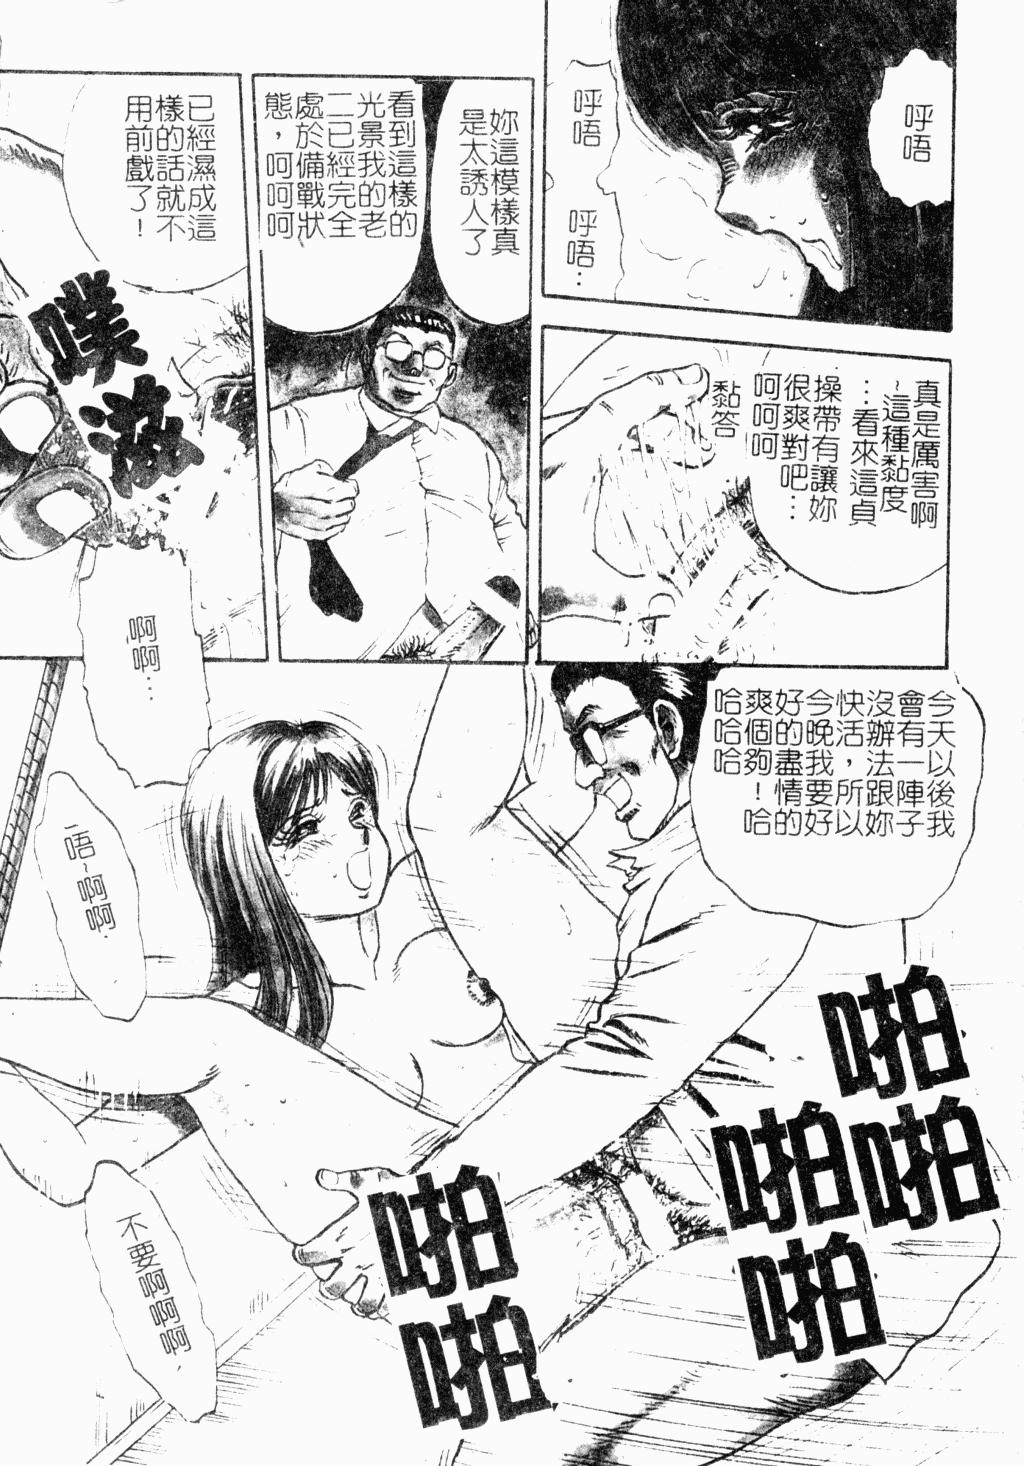 Penis Sucking Jo Kyooshi Kankin Women Sucking Dicks - Page 6